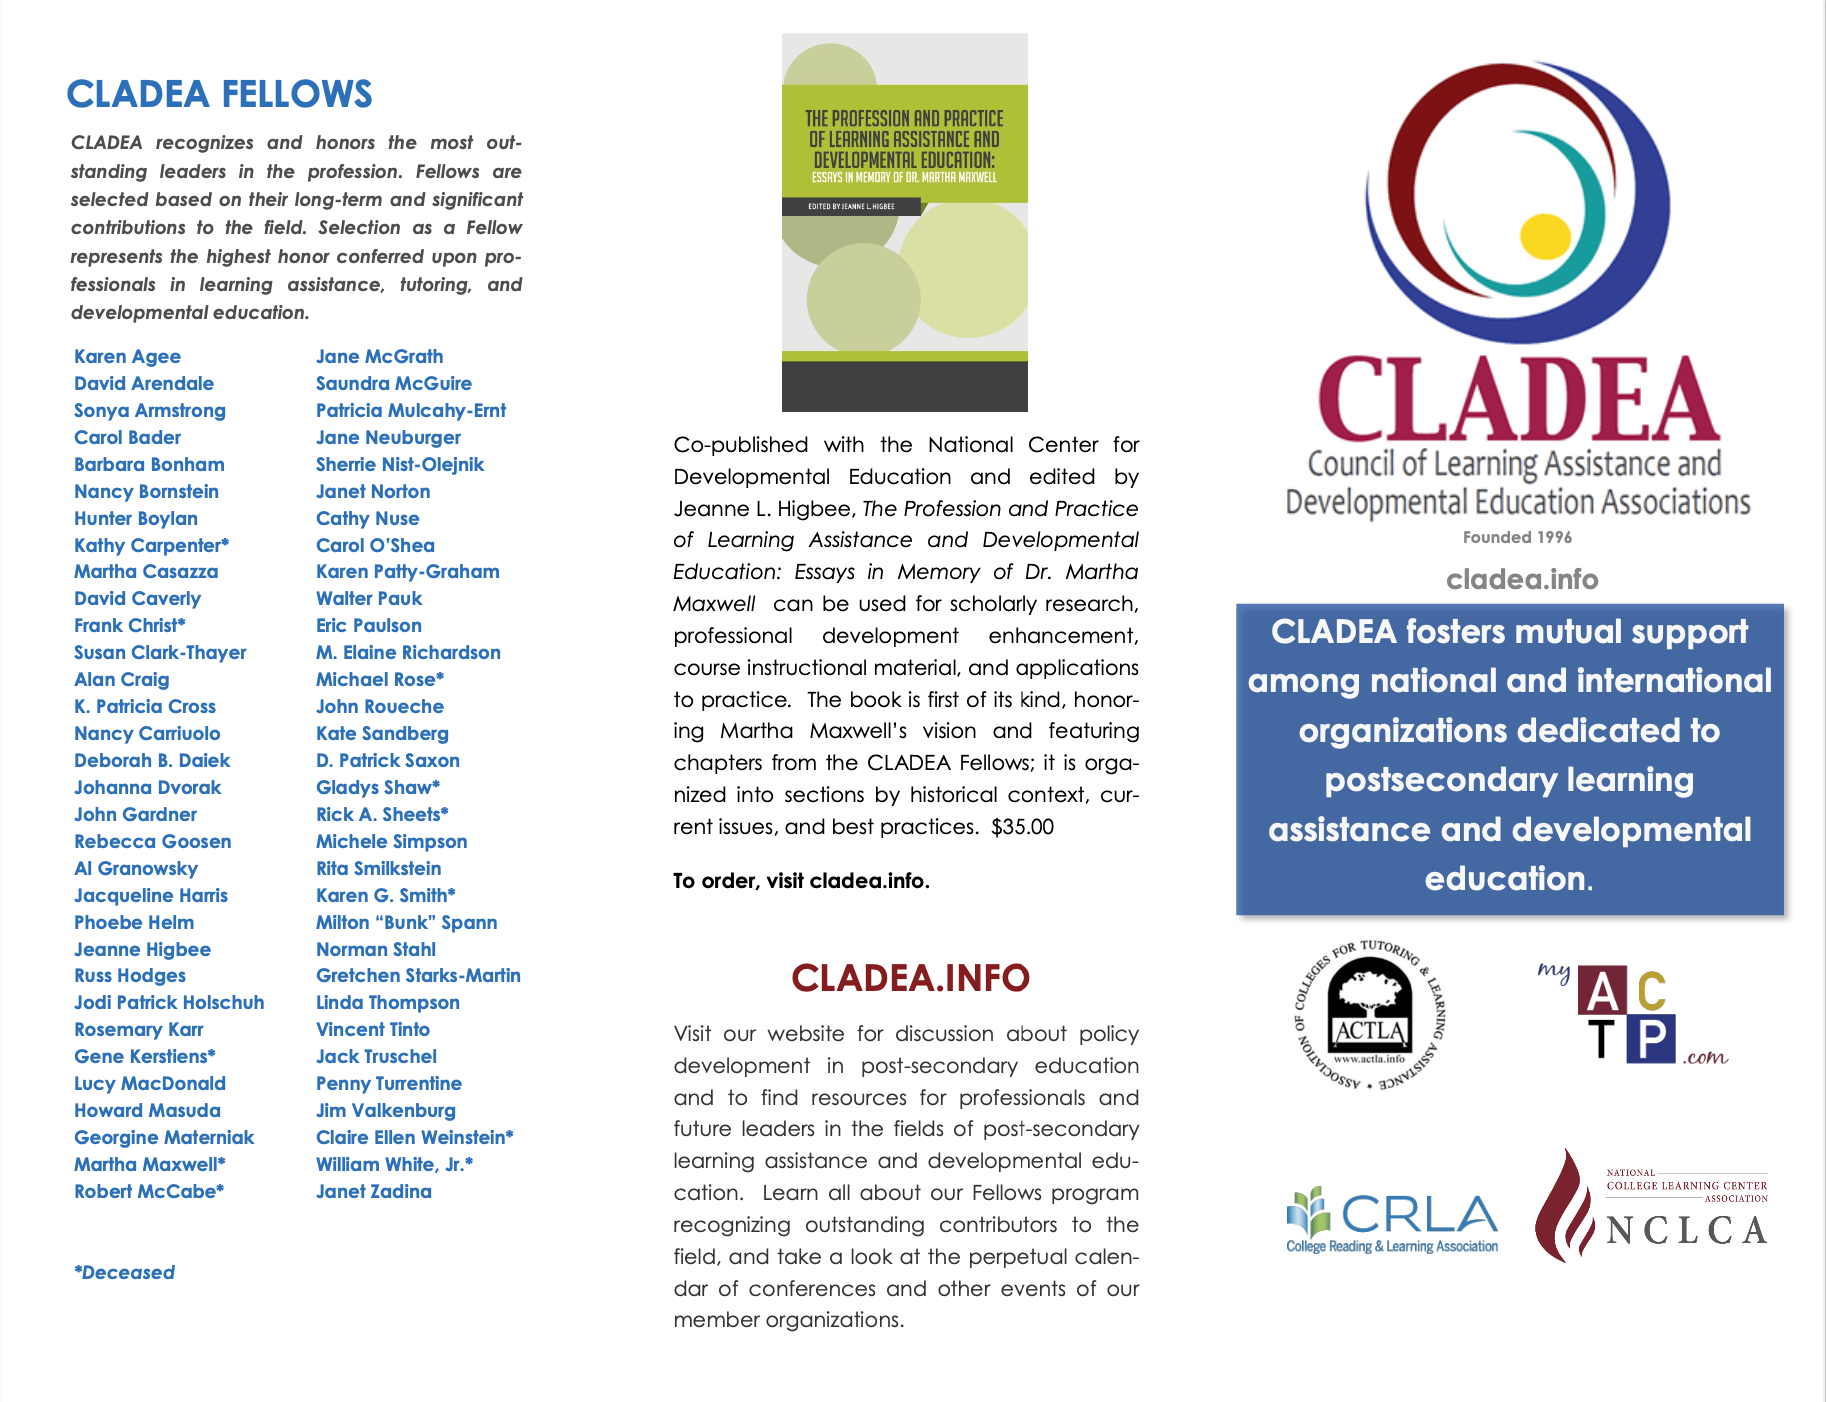 Image of the CLADEA Brochure